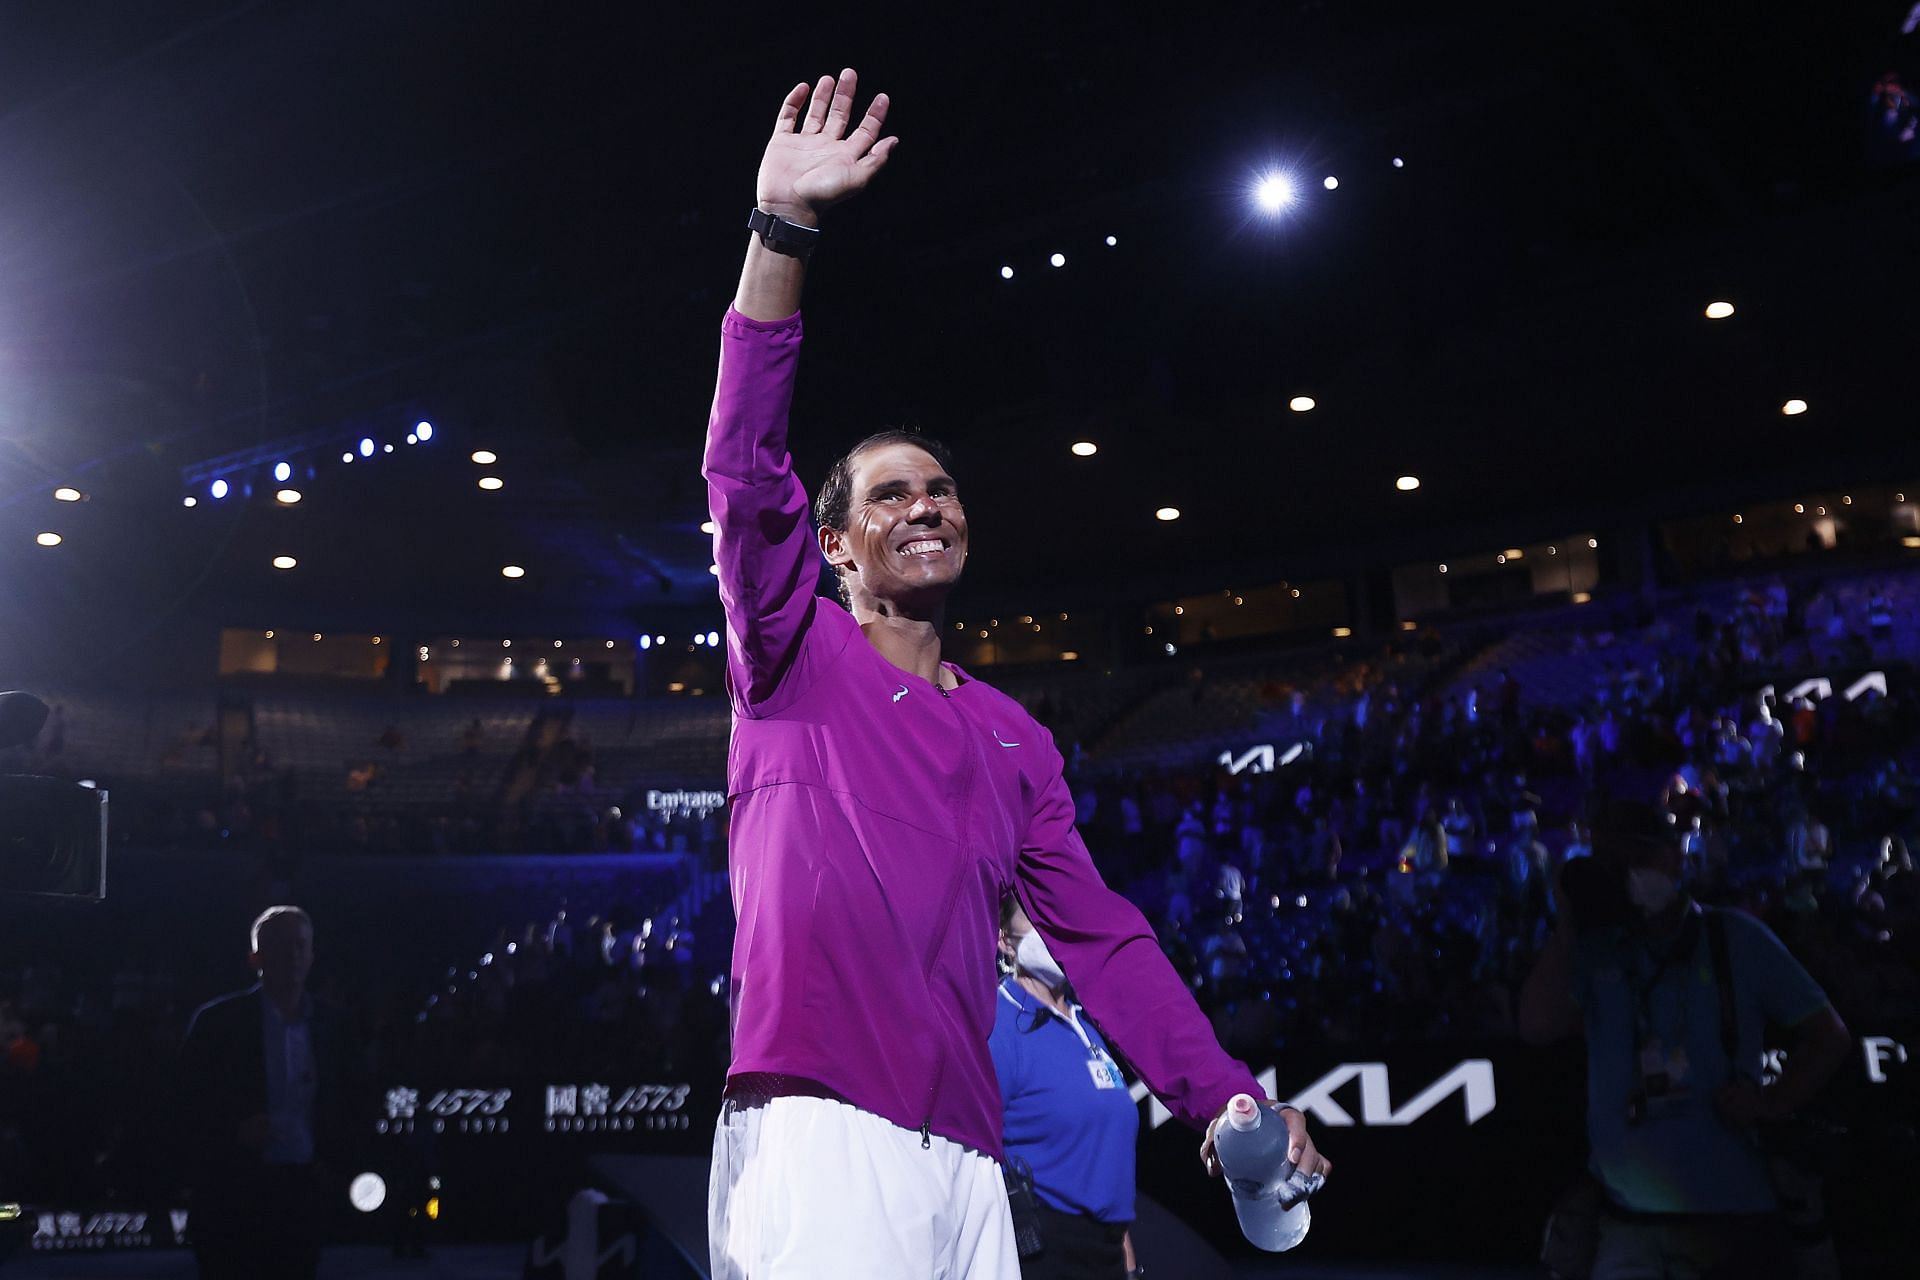 Rafael Nadal has won three titles so far this season